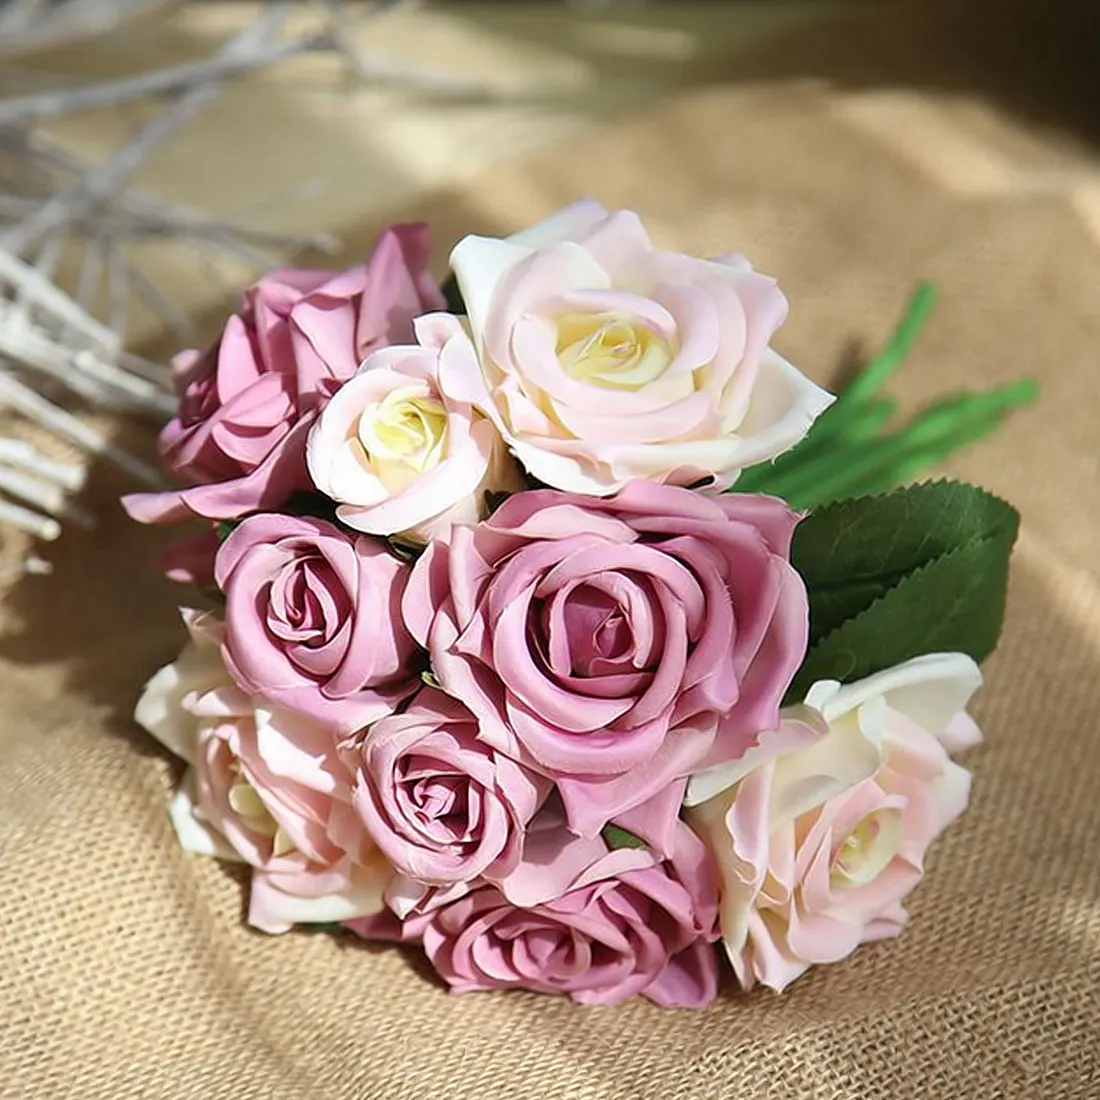 9 шт./лот Искусственные цветы розы свадебный букет год розовый Королевская роза из шелка с цветочным принтом украшения дома Свадебная вечеринка Декор - Цвет: White purple